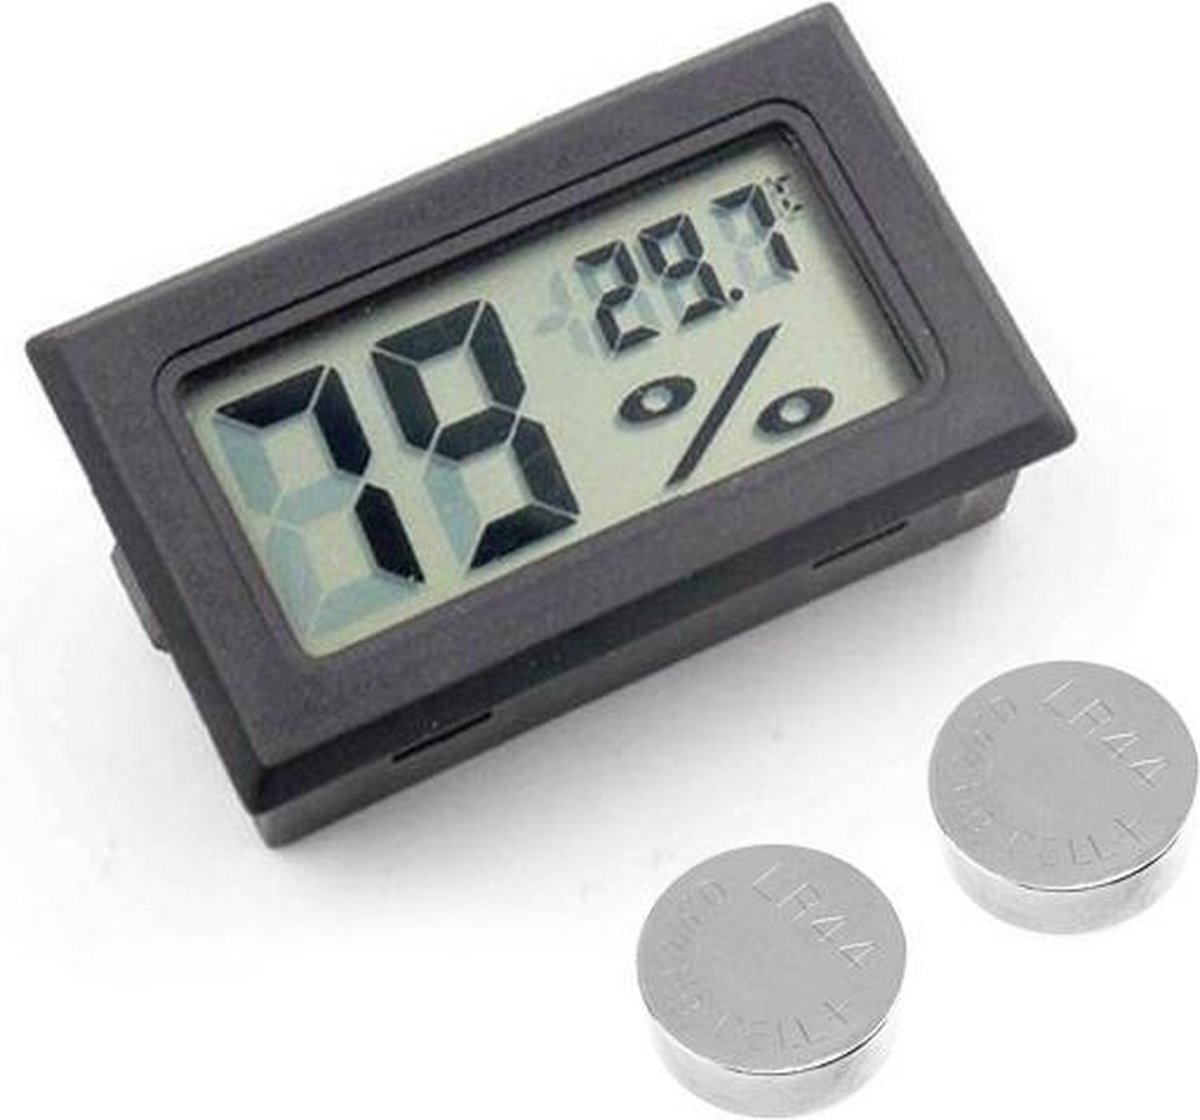 2x Professionele Digitale Hygrometer Met Batterijen - Zwart - Meet Temperatuur - Voor buiten en binnen - 2 in 1 - Hygrometer- van Heble® - Heble®